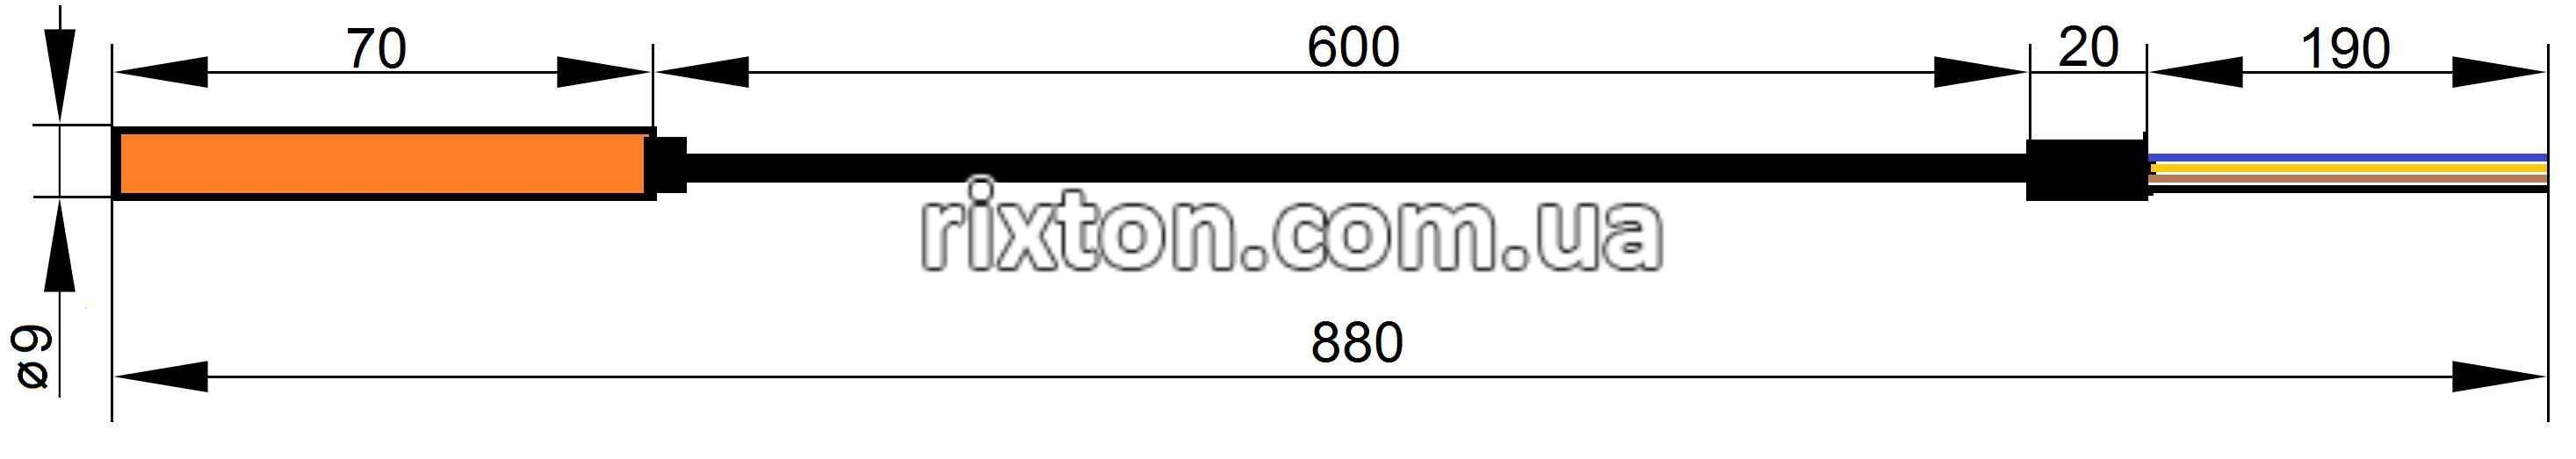 Датчик температури для автоматики Inter Electronics (180)